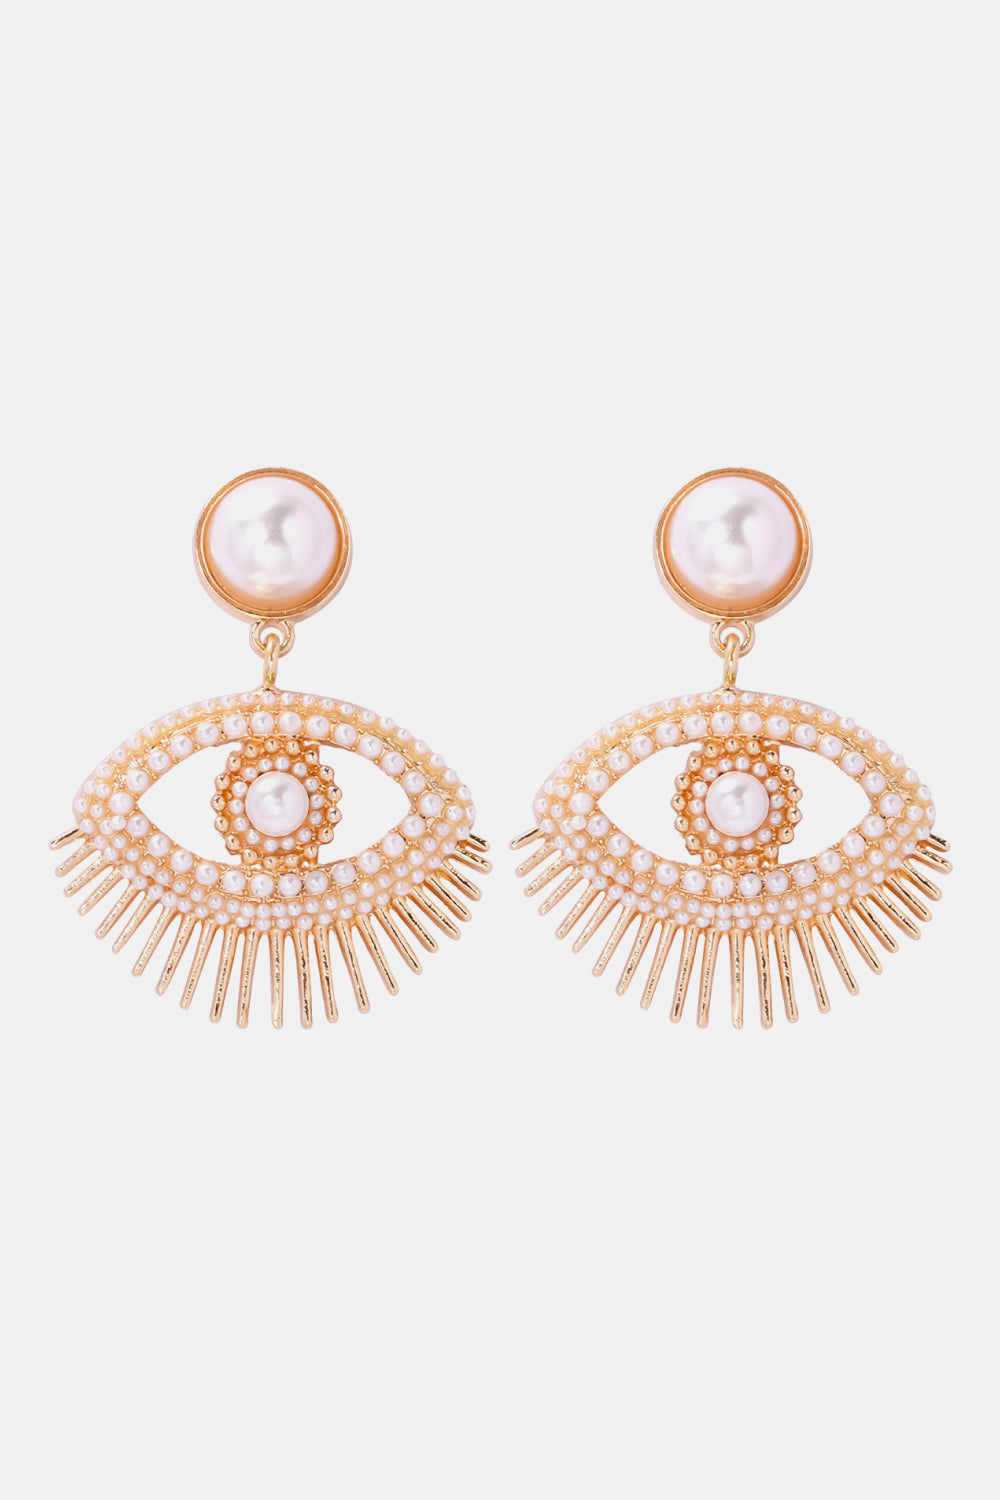 Evil Eye Shape Rhinestone Zinc Alloy Synthetic Dangle Earrings - White / One Size - Women’s Jewelry - Earrings - 7